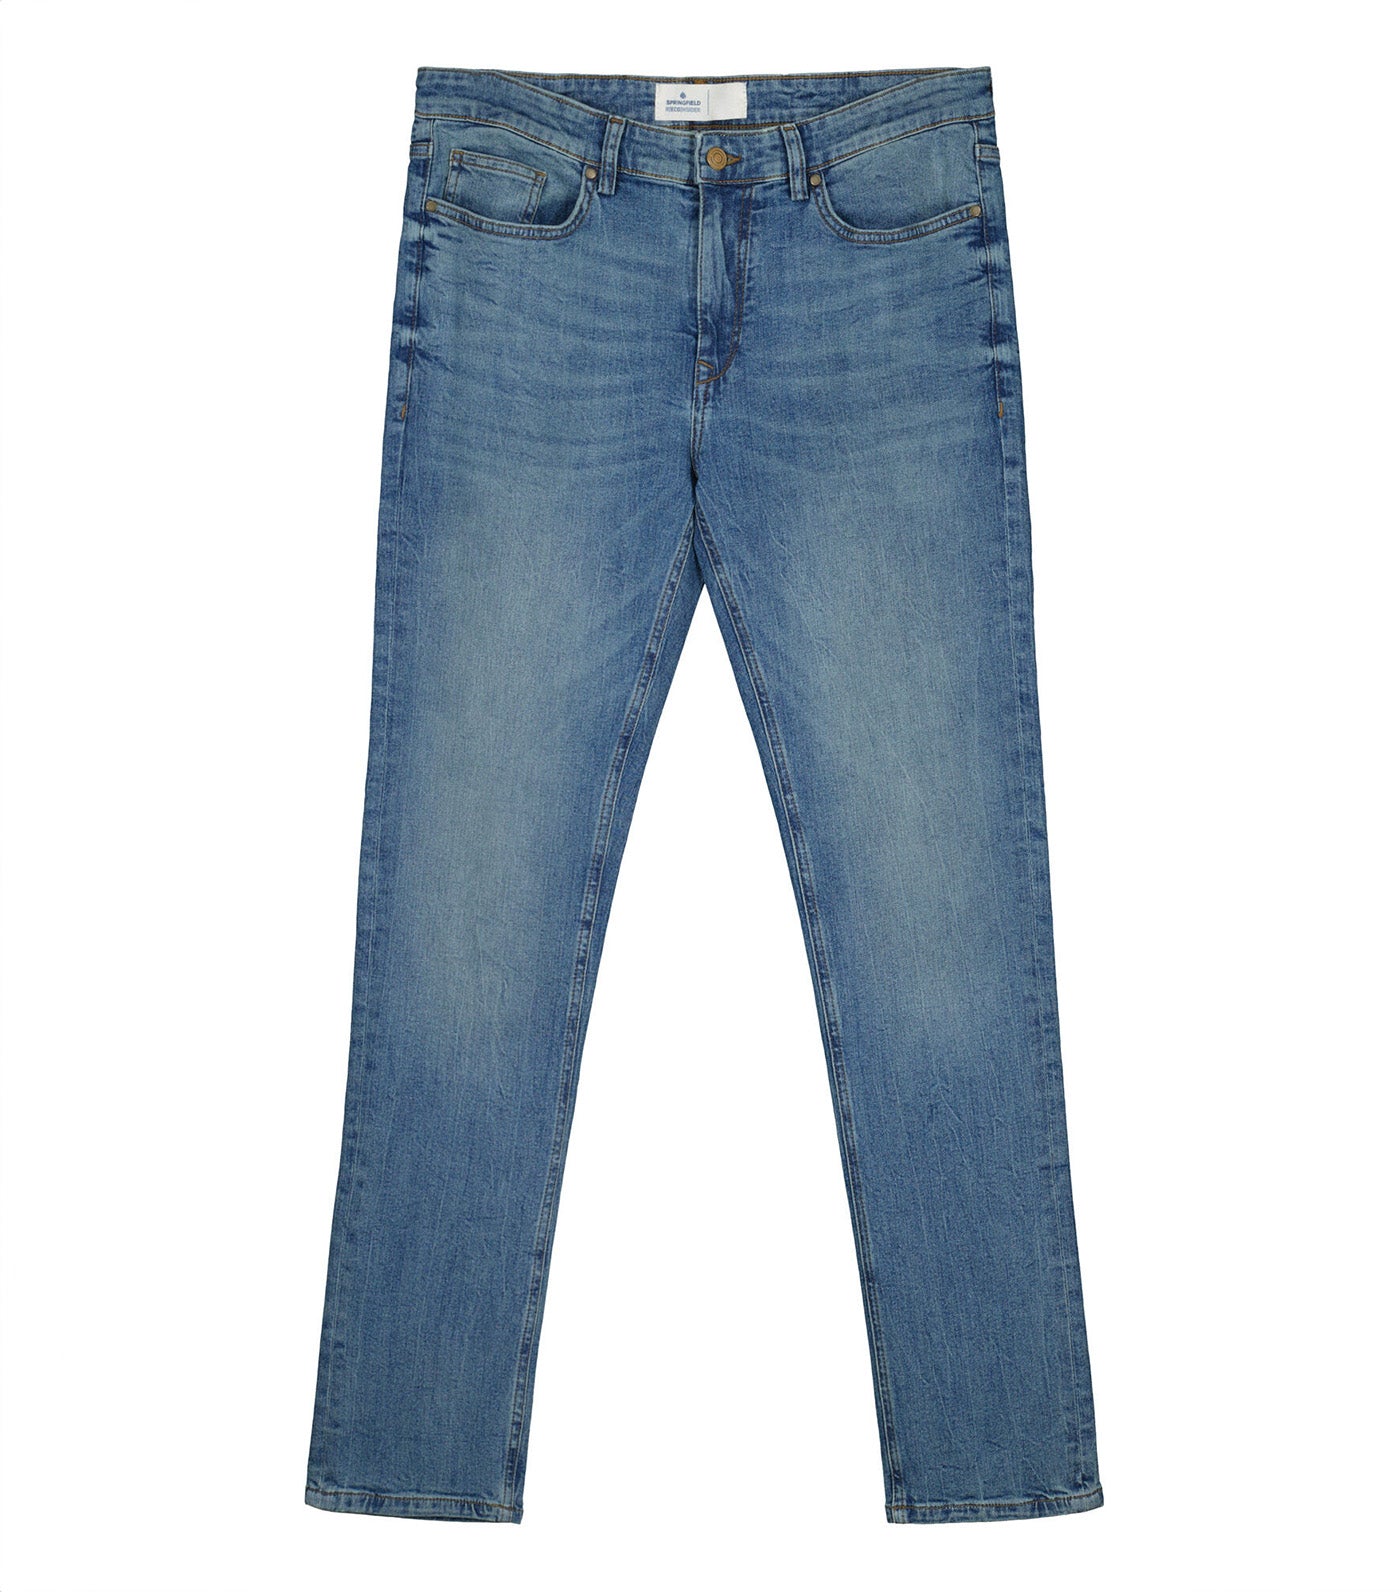 Medium-Soiled Wash Skinny Jeans Denim